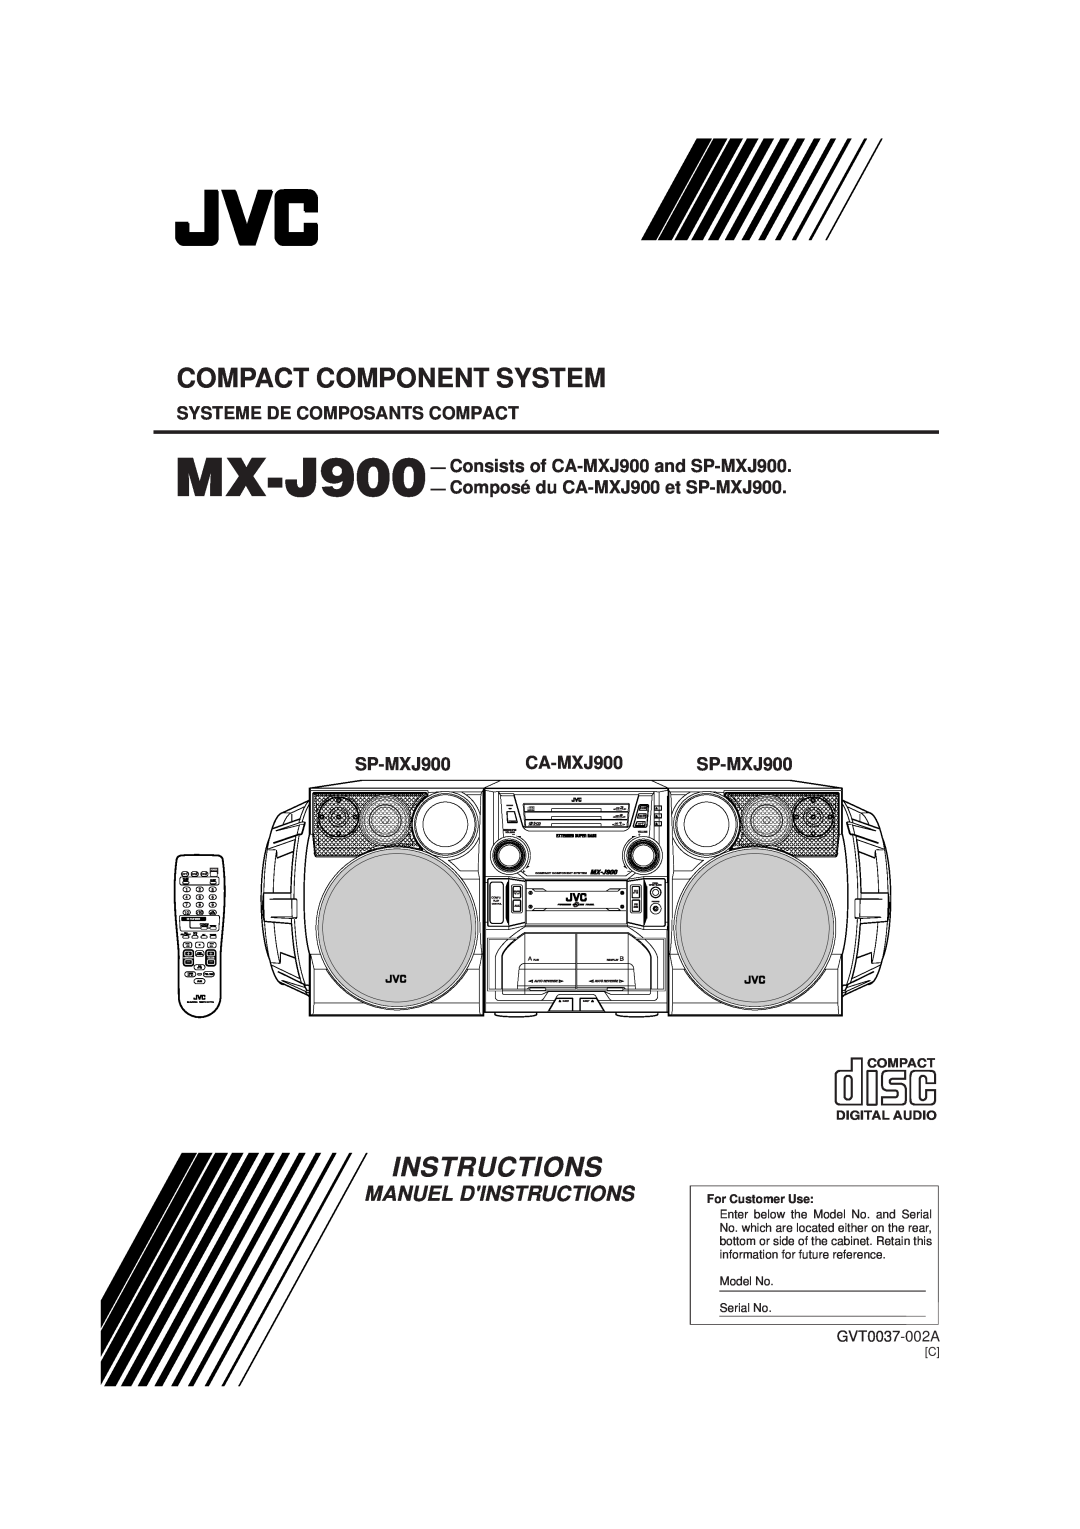 JVC CA-MXJ900 manual Compact Component System, Instructions, Manual De Instrucciones Instruções, GVT0037-003A 